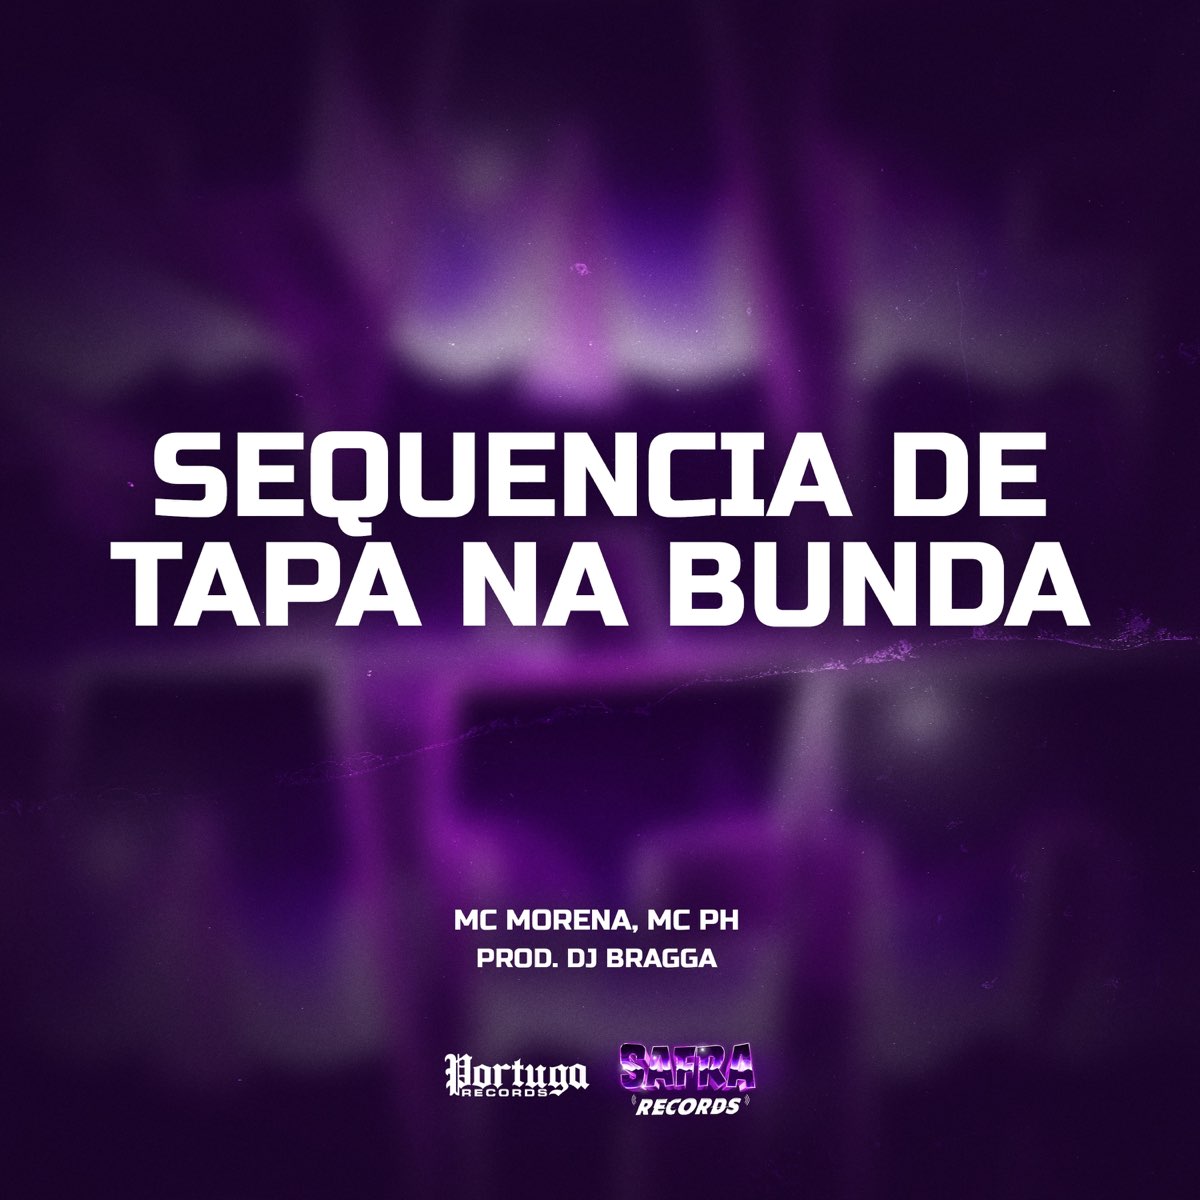 ‎sequencia De Tapa Na Bunda Single De Mc Morena Mc Ph And Dj Bragga No Apple Music 0303